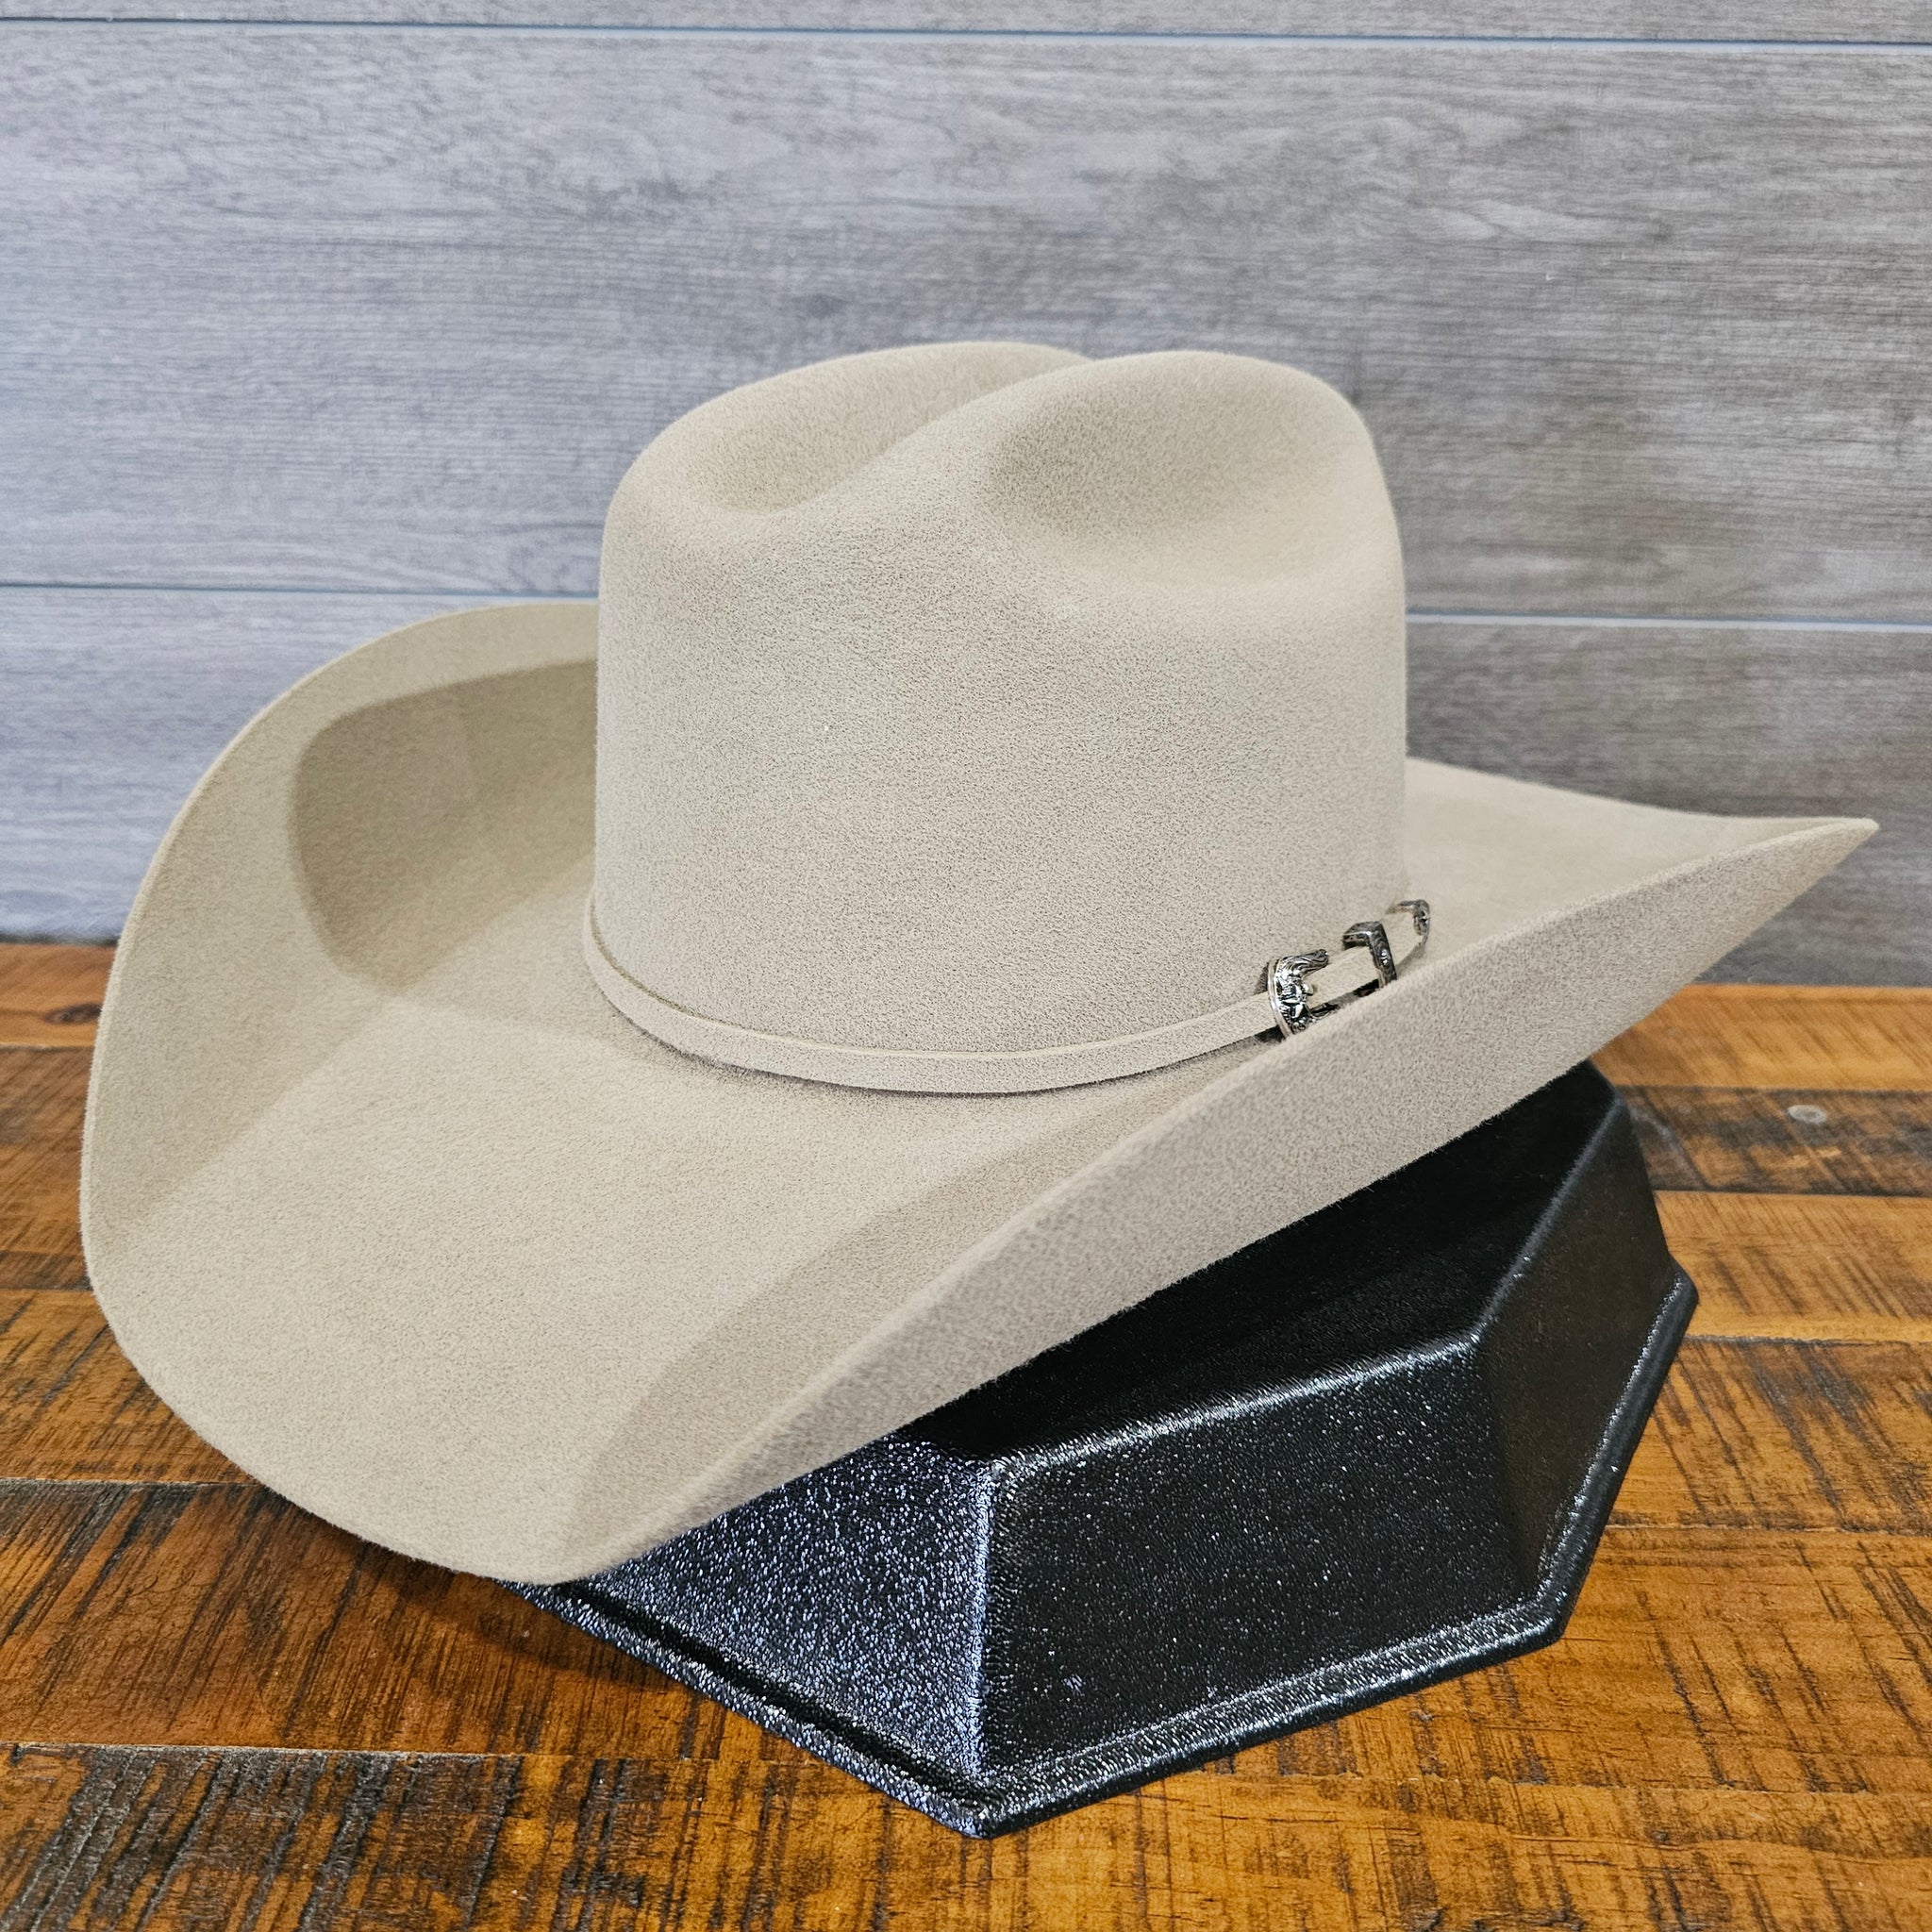 Twister 2X Wool Felt Cowboy Hat (4 1/4” Brim)